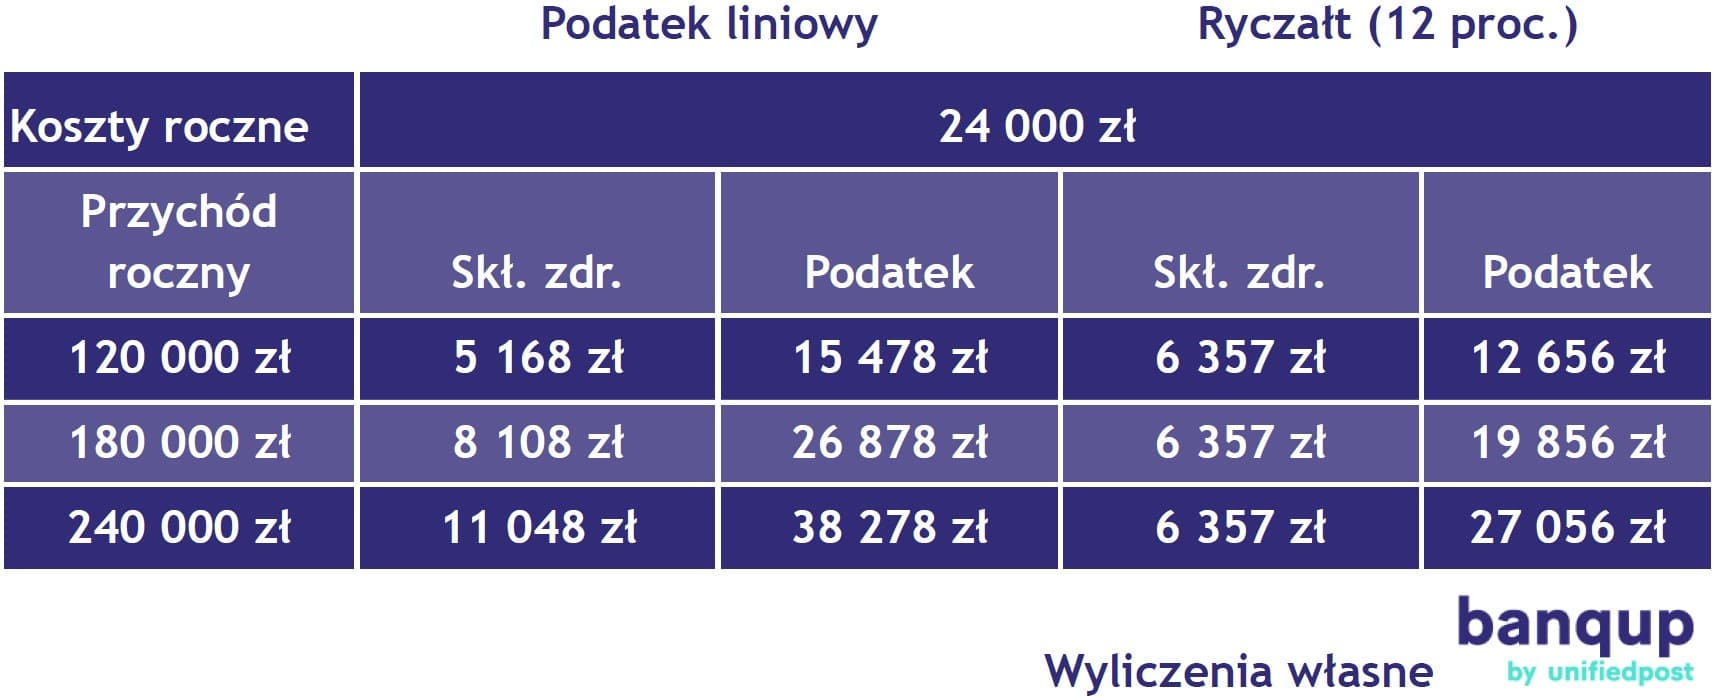 Polski Ład – w IT samozatrudnieni mogą oszczędzić ponad 10 tys. zł rocznie przechodząc na ryczałt 2